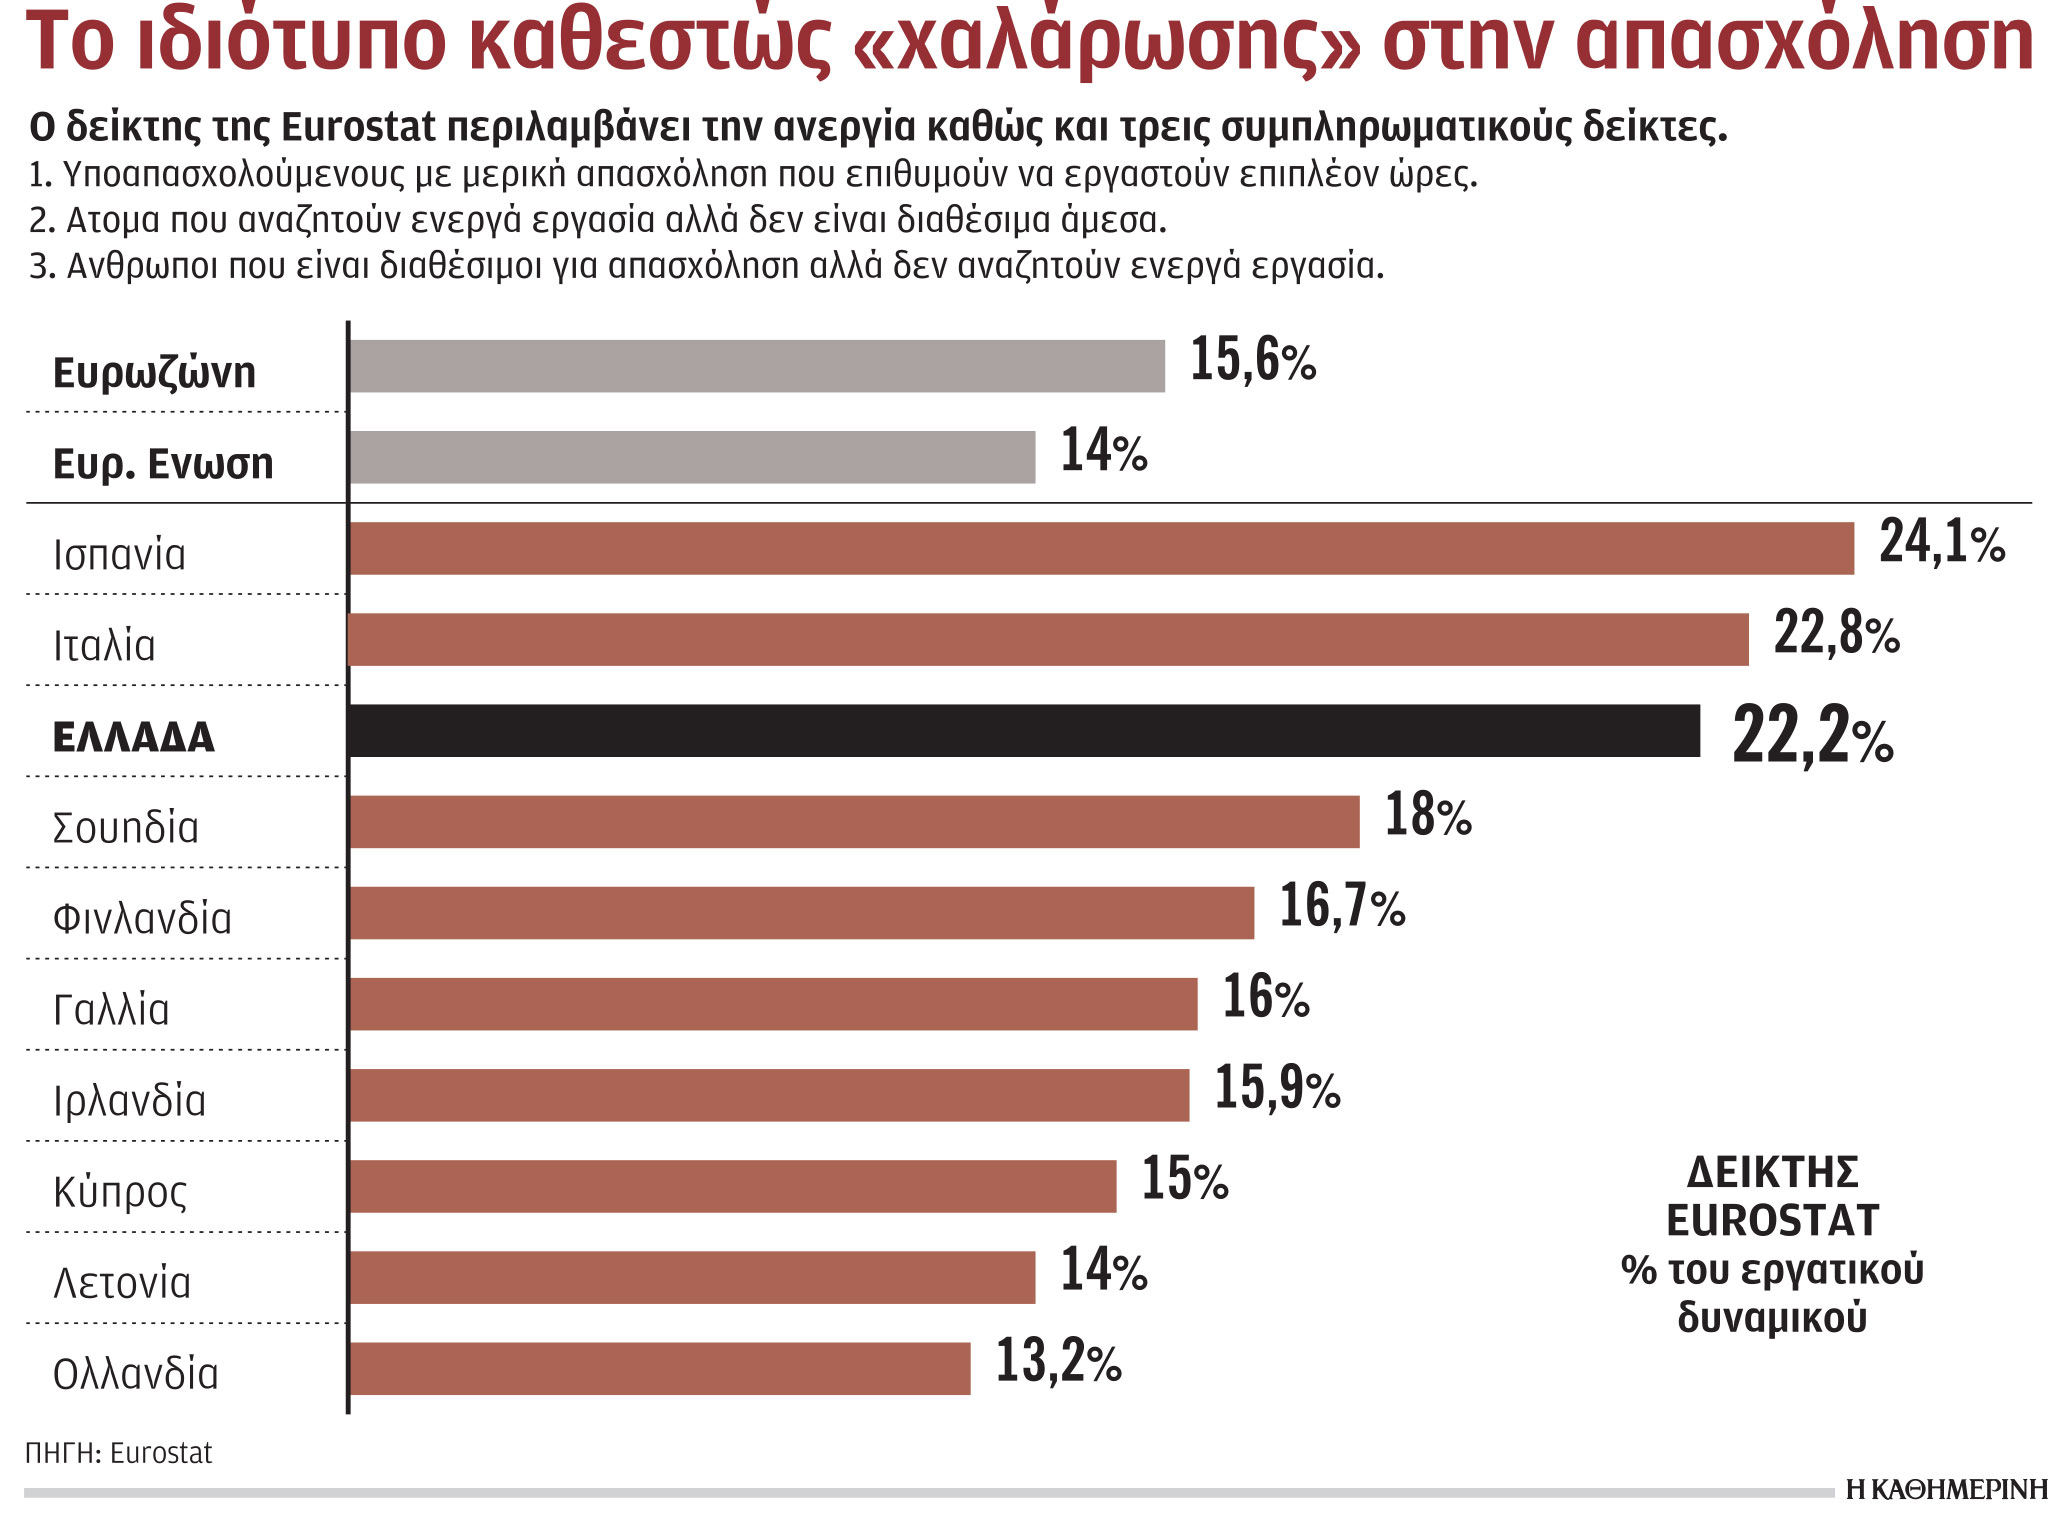 Θέλει να εργαστεί, αλλά δεν αναζητάει δουλειά το 22,5% των Ελλήνων-1